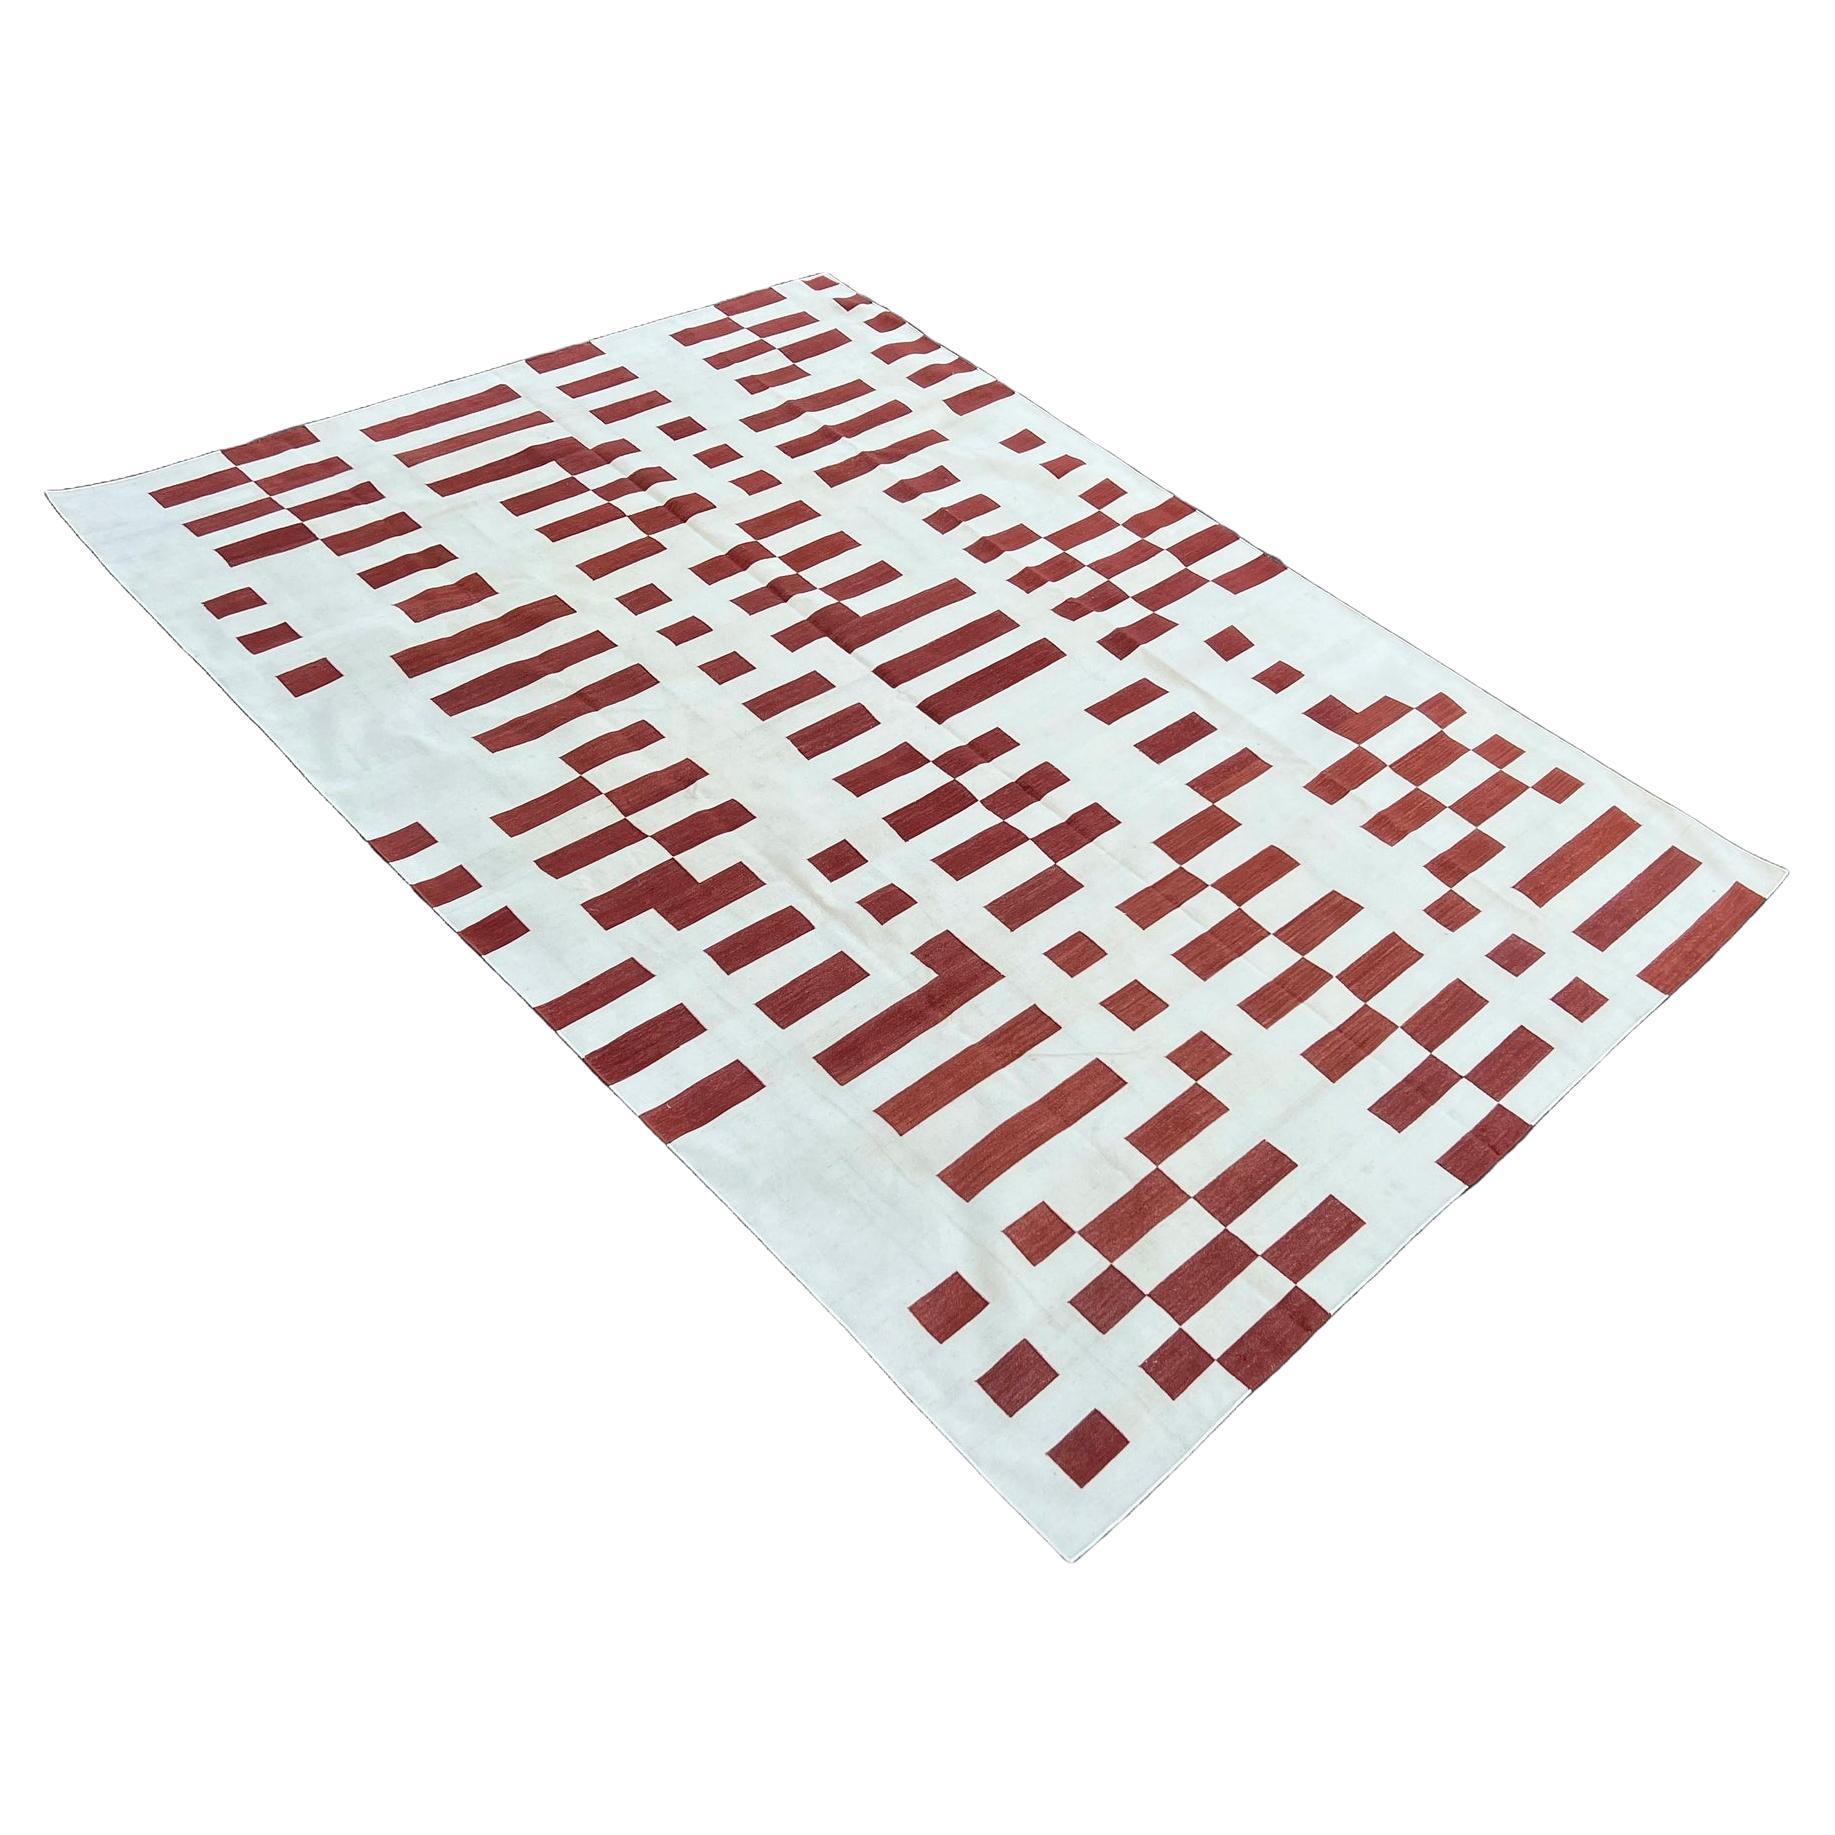 Baumwolle pflanzlich gefärbt rot und weiß gestreift indischen Dhurrie Teppich-8'x10' 
Diese speziellen flachgewebten Dhurries werden aus 15-fachem Garn aus 100% Baumwolle handgewebt. Aufgrund der speziellen Fertigungstechniken, die zur Herstellung